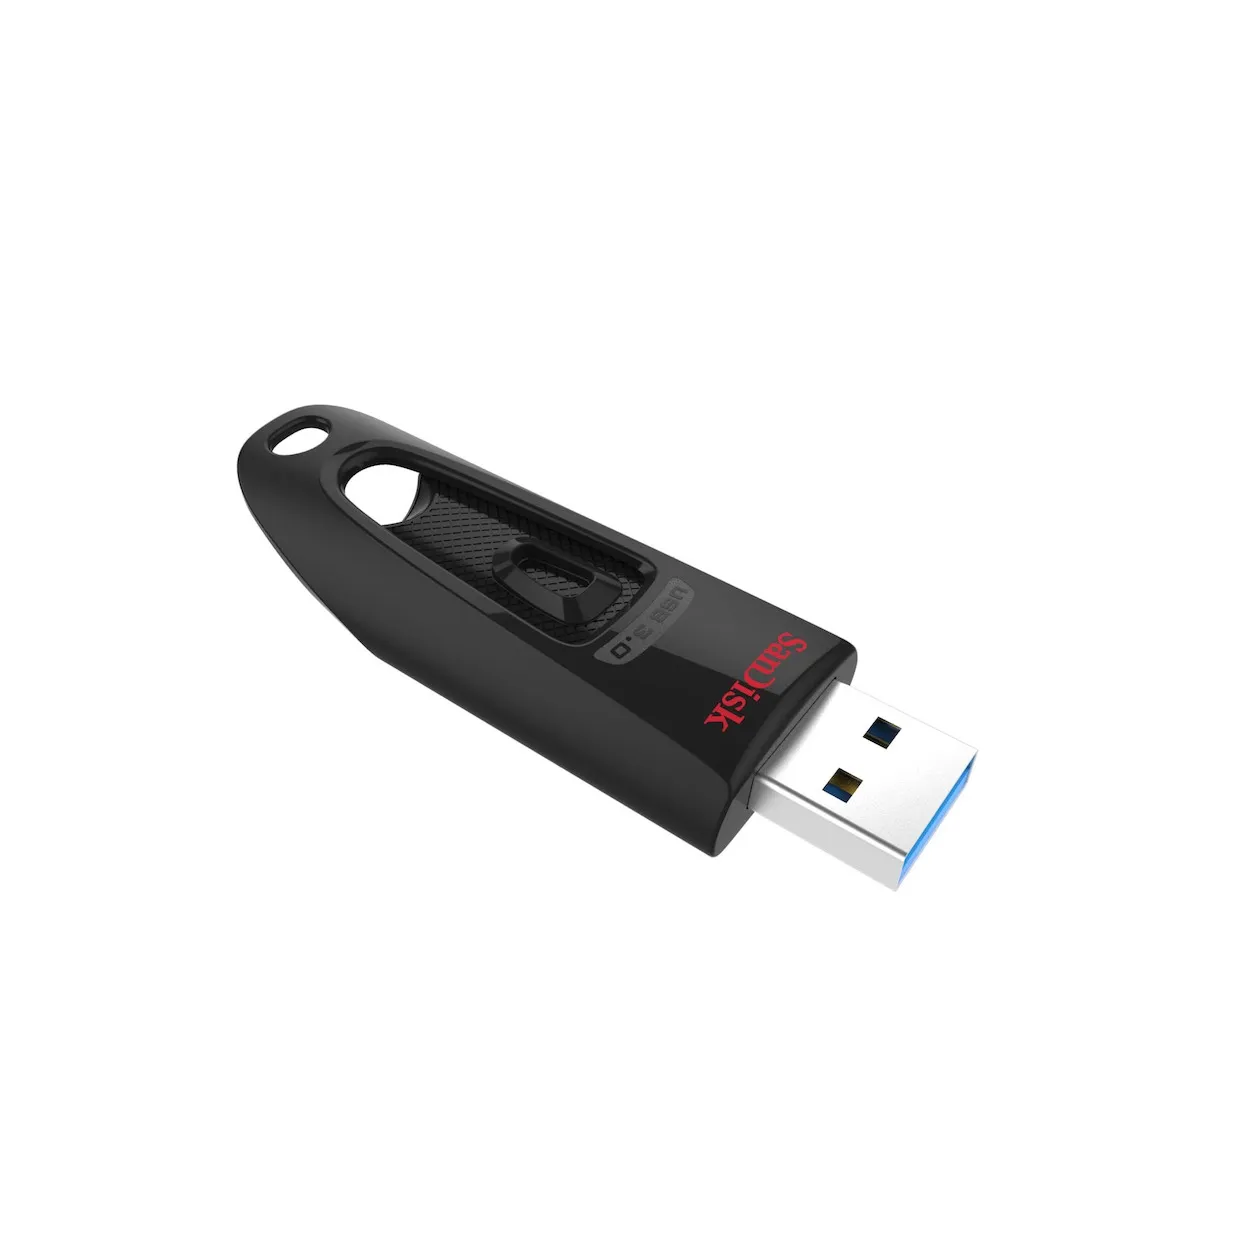 SanDisk USB Ultra 32GB 100MB/s - USB 3.0